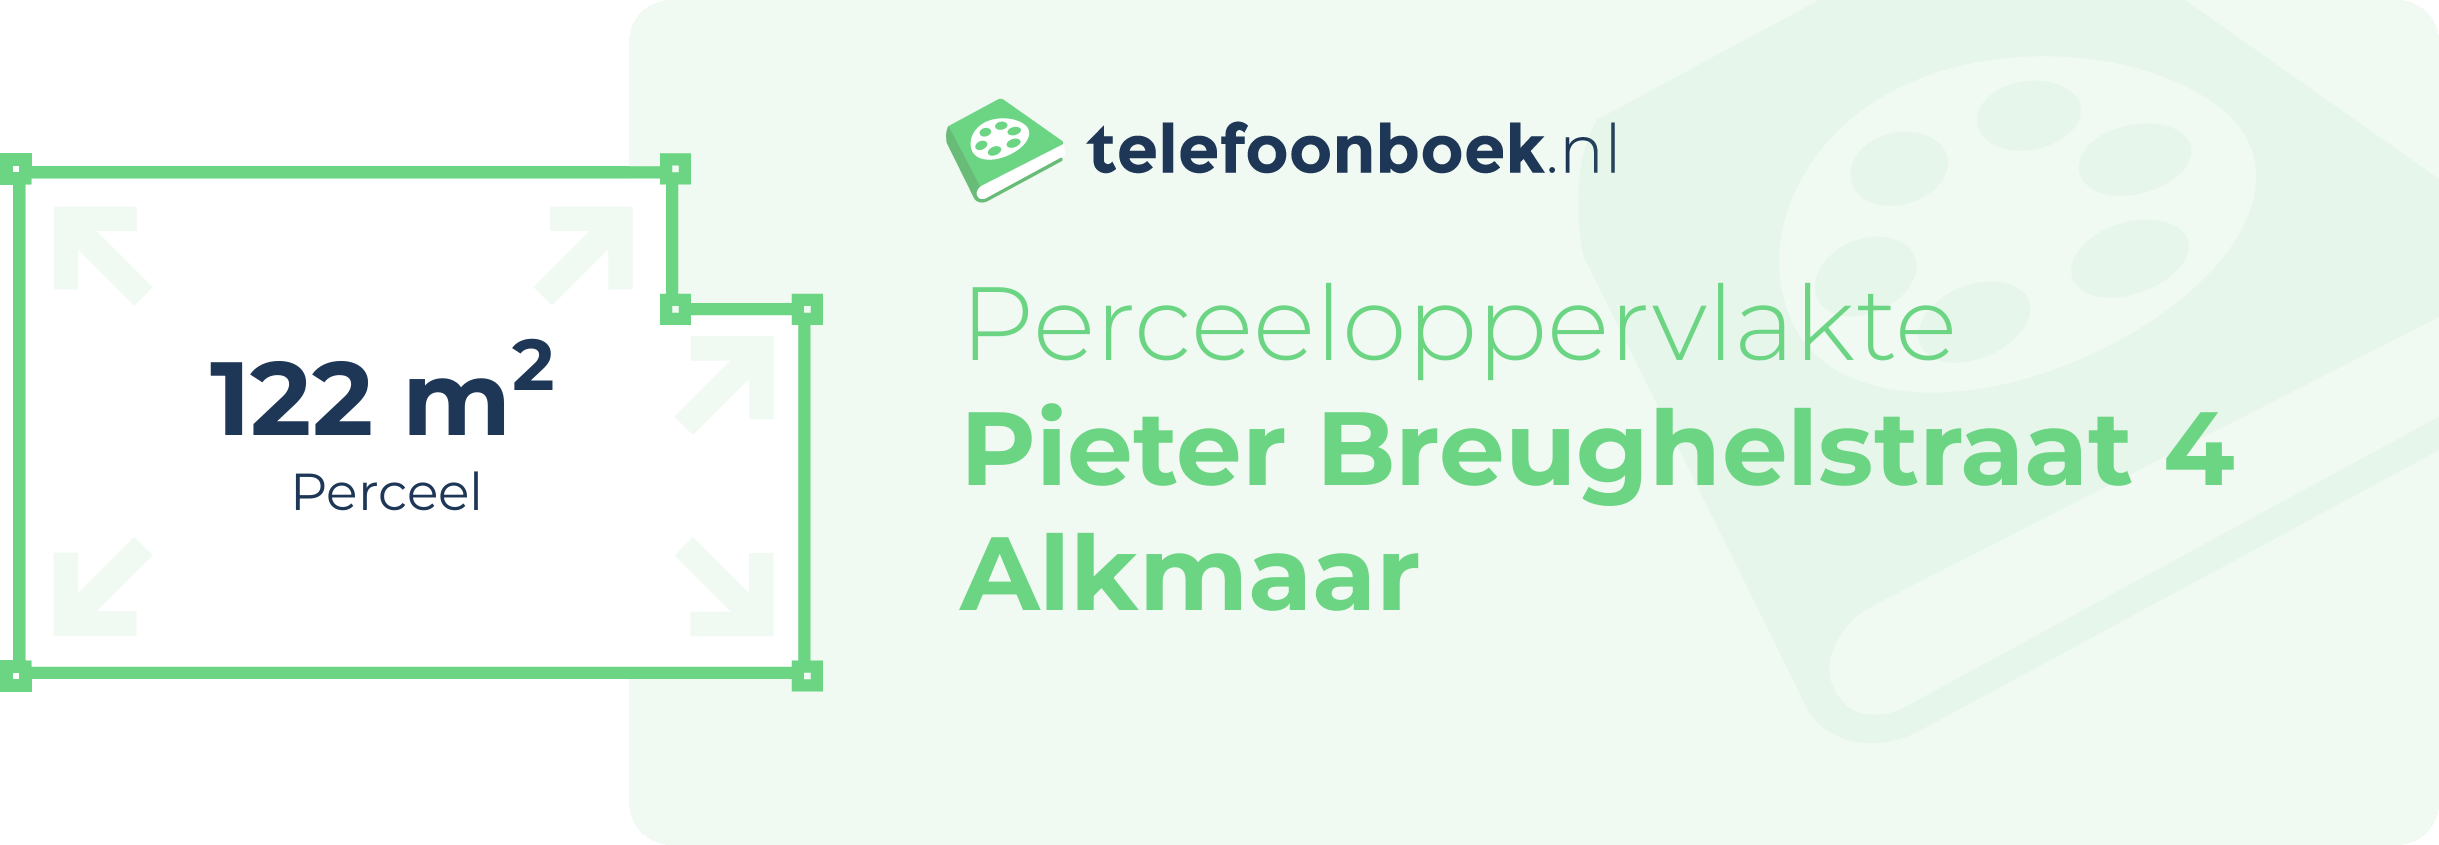 Perceeloppervlakte Pieter Breughelstraat 4 Alkmaar